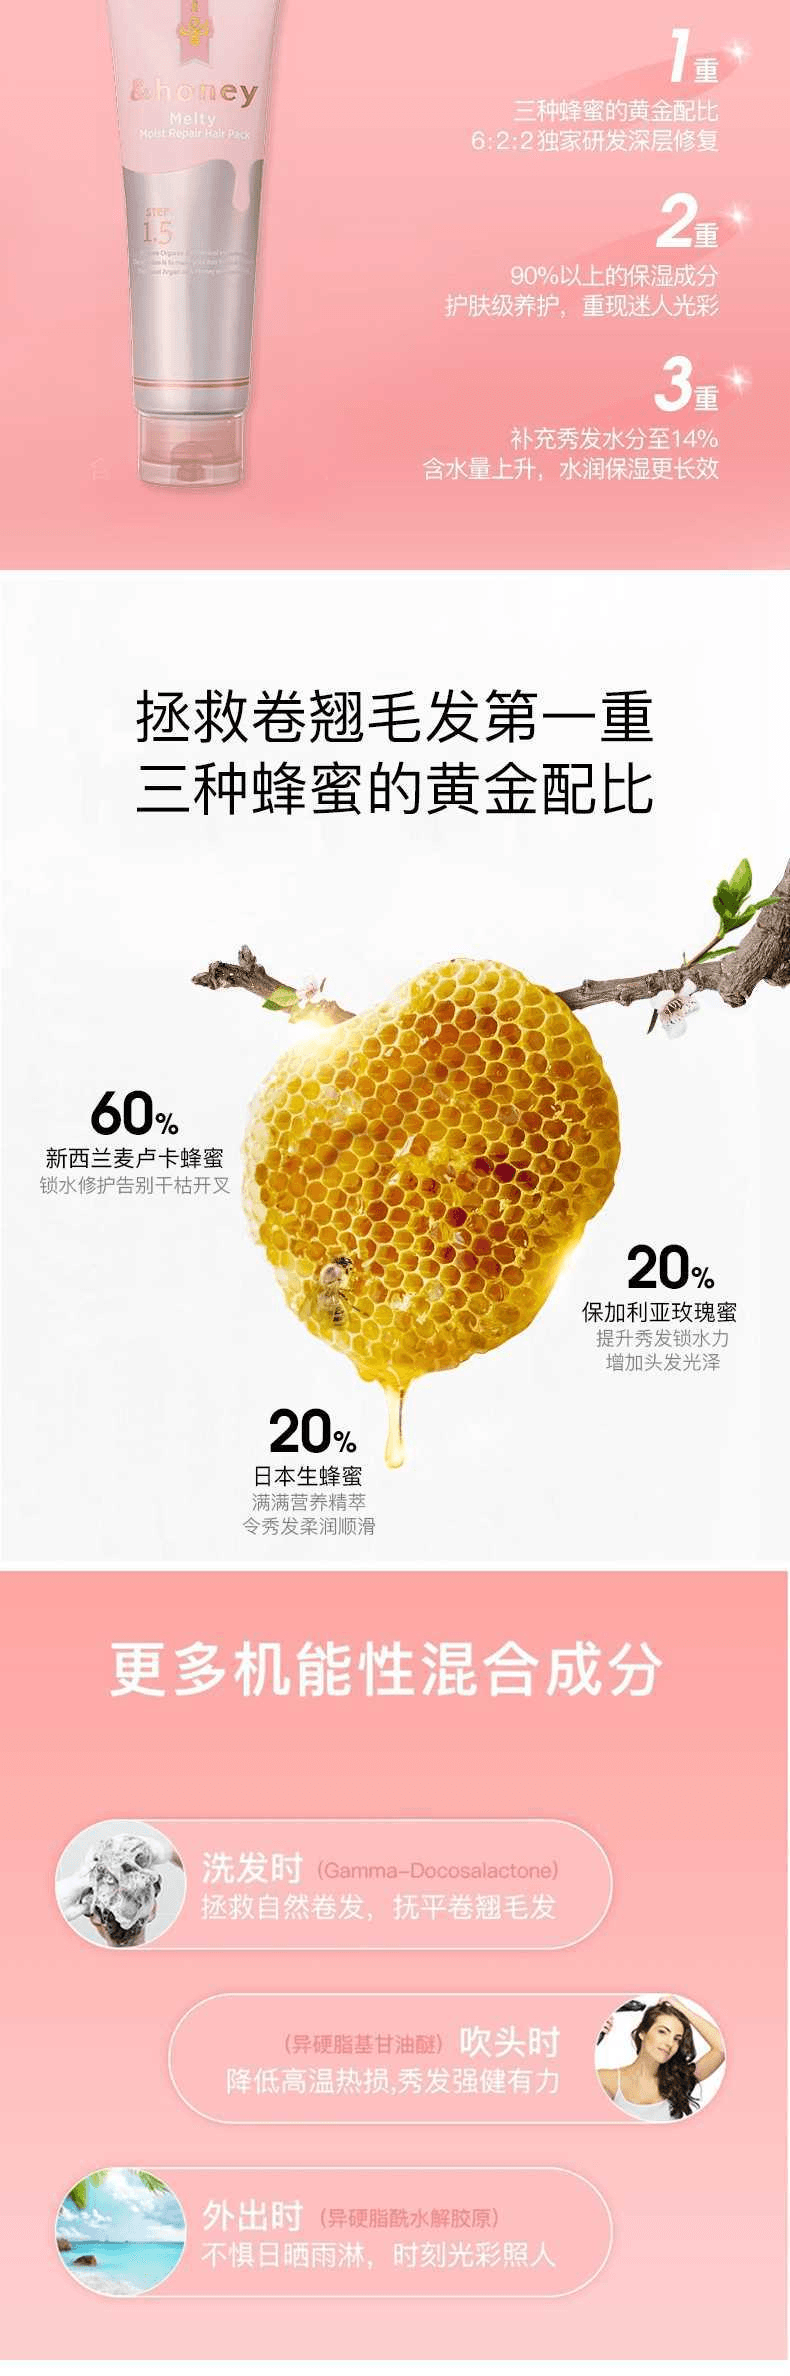 【日本直效郵件】&Honey安蒂花子 Melty系列 玫瑰蜂蜜保濕護髮膏 130g